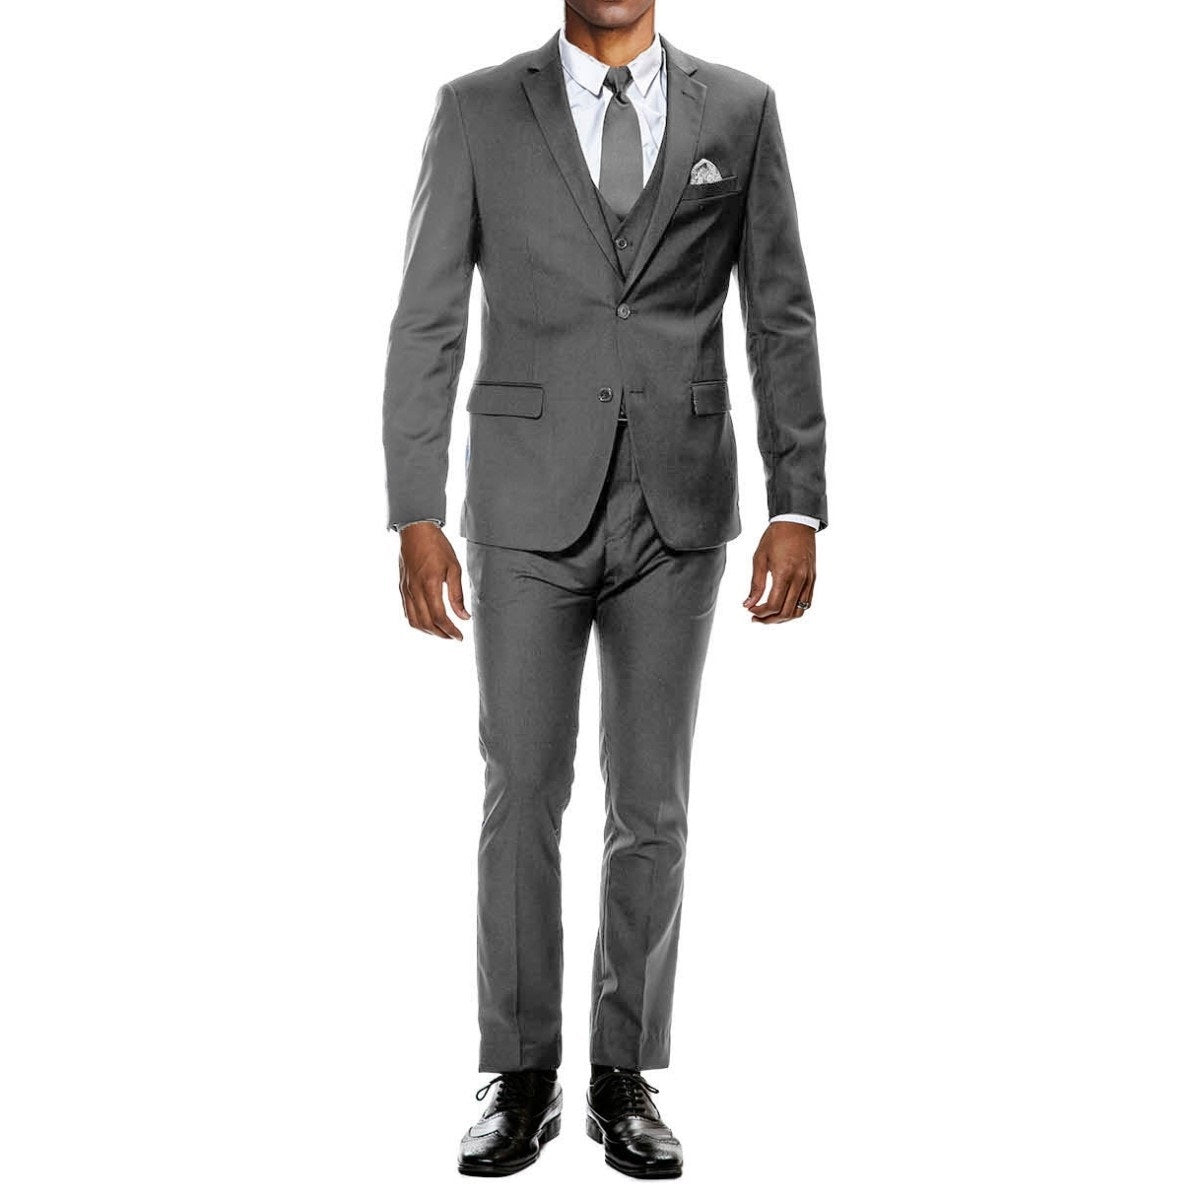 Traje Formal para Hombre TA-M282SK-04 - Formal Suit for Men